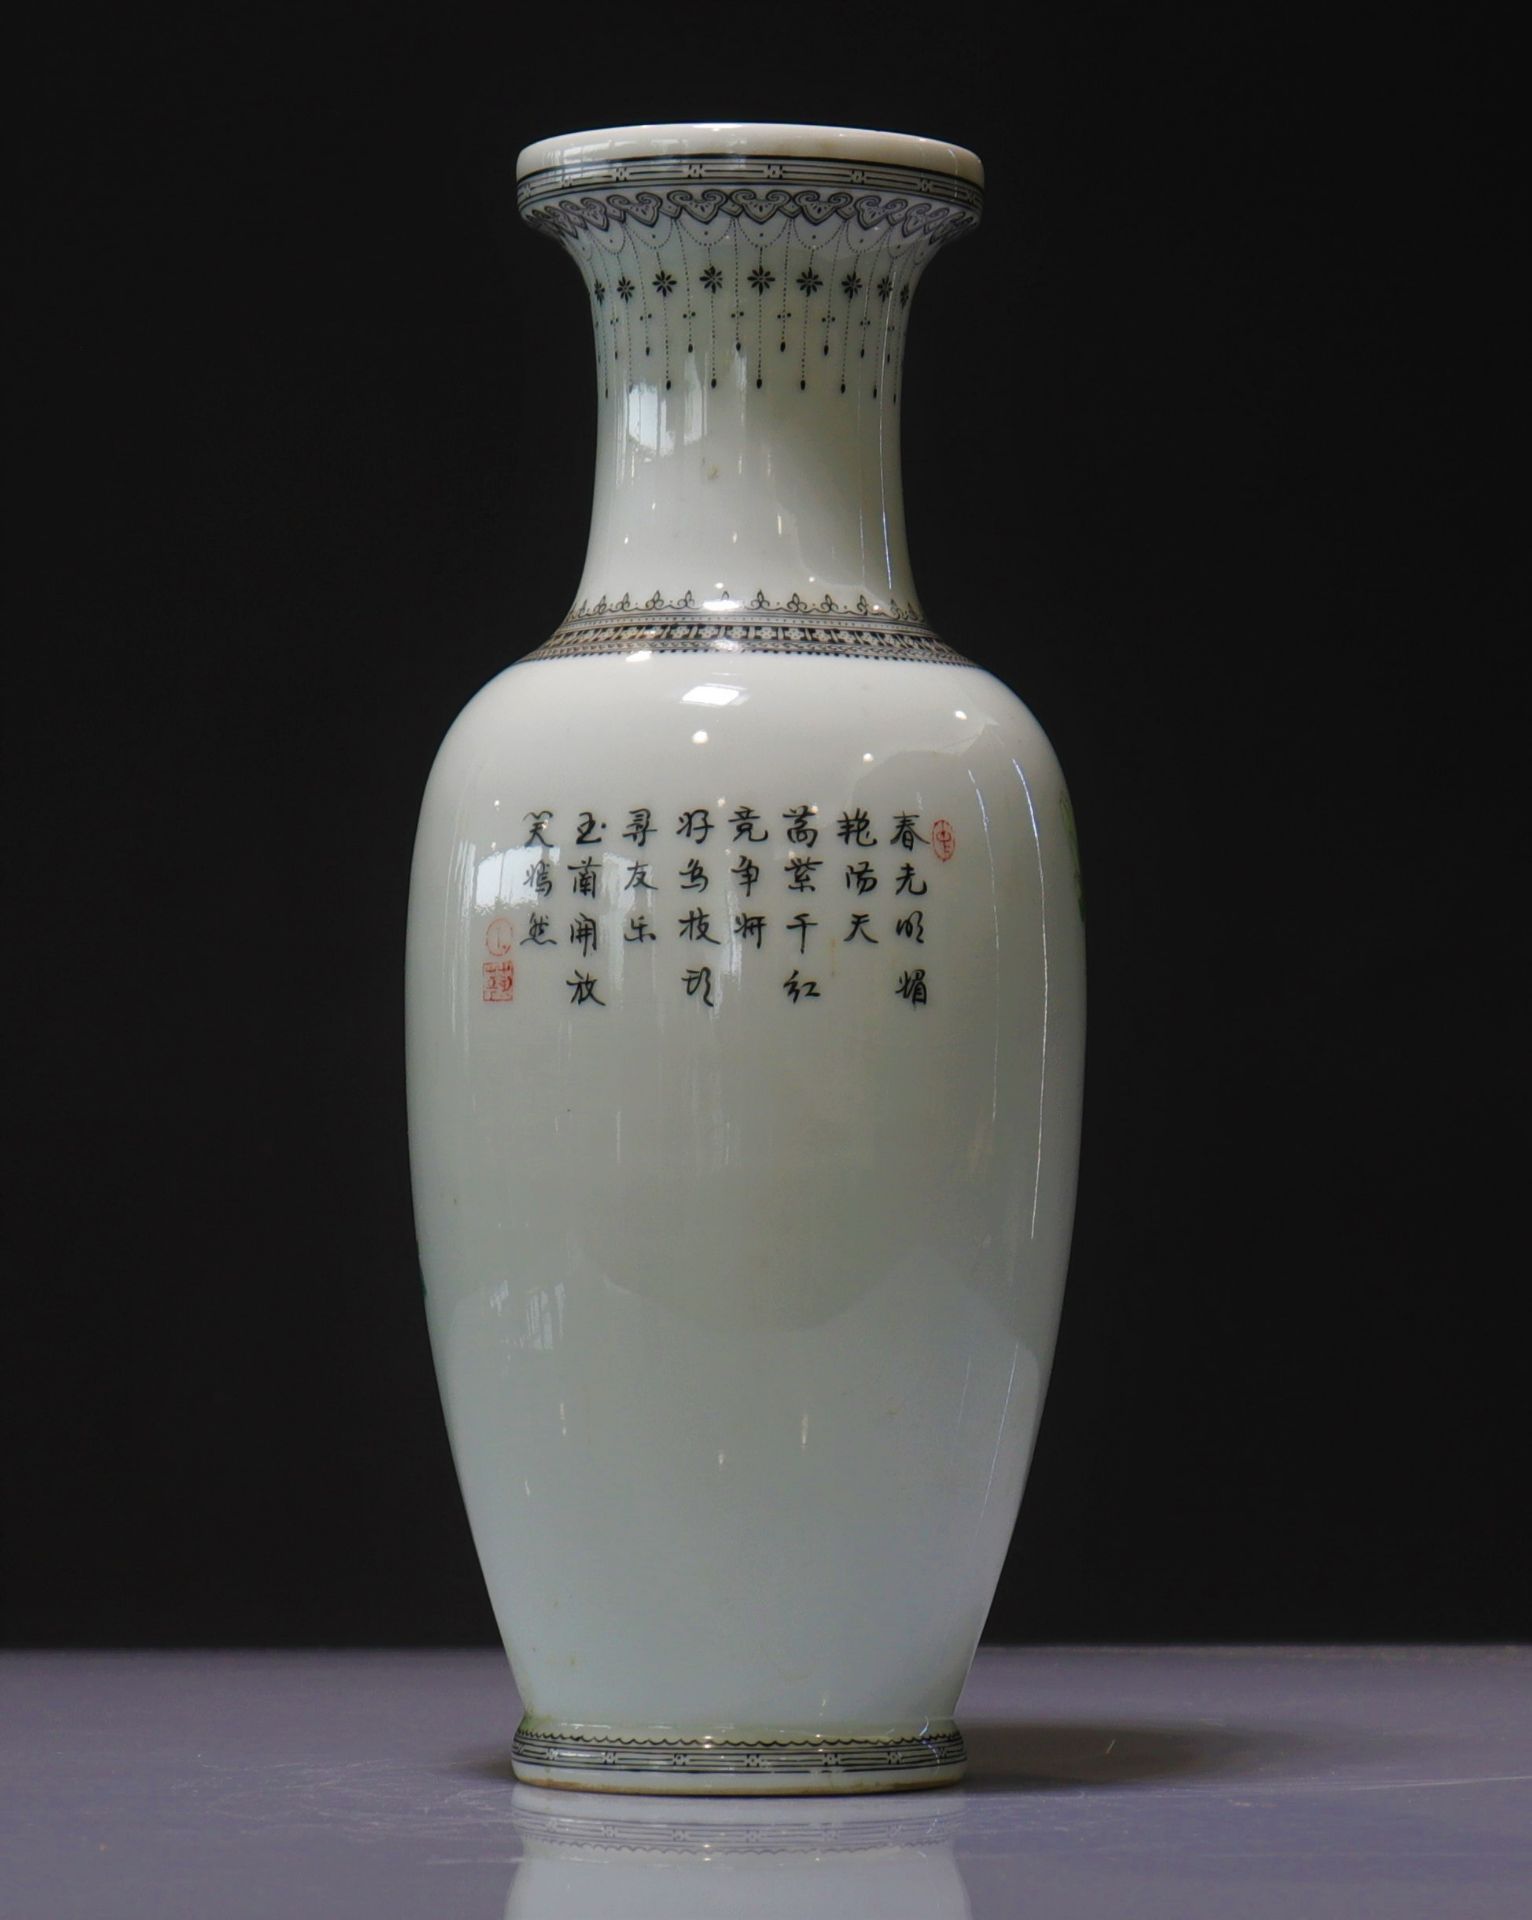 Chinese republic porcelain vase - Image 2 of 3